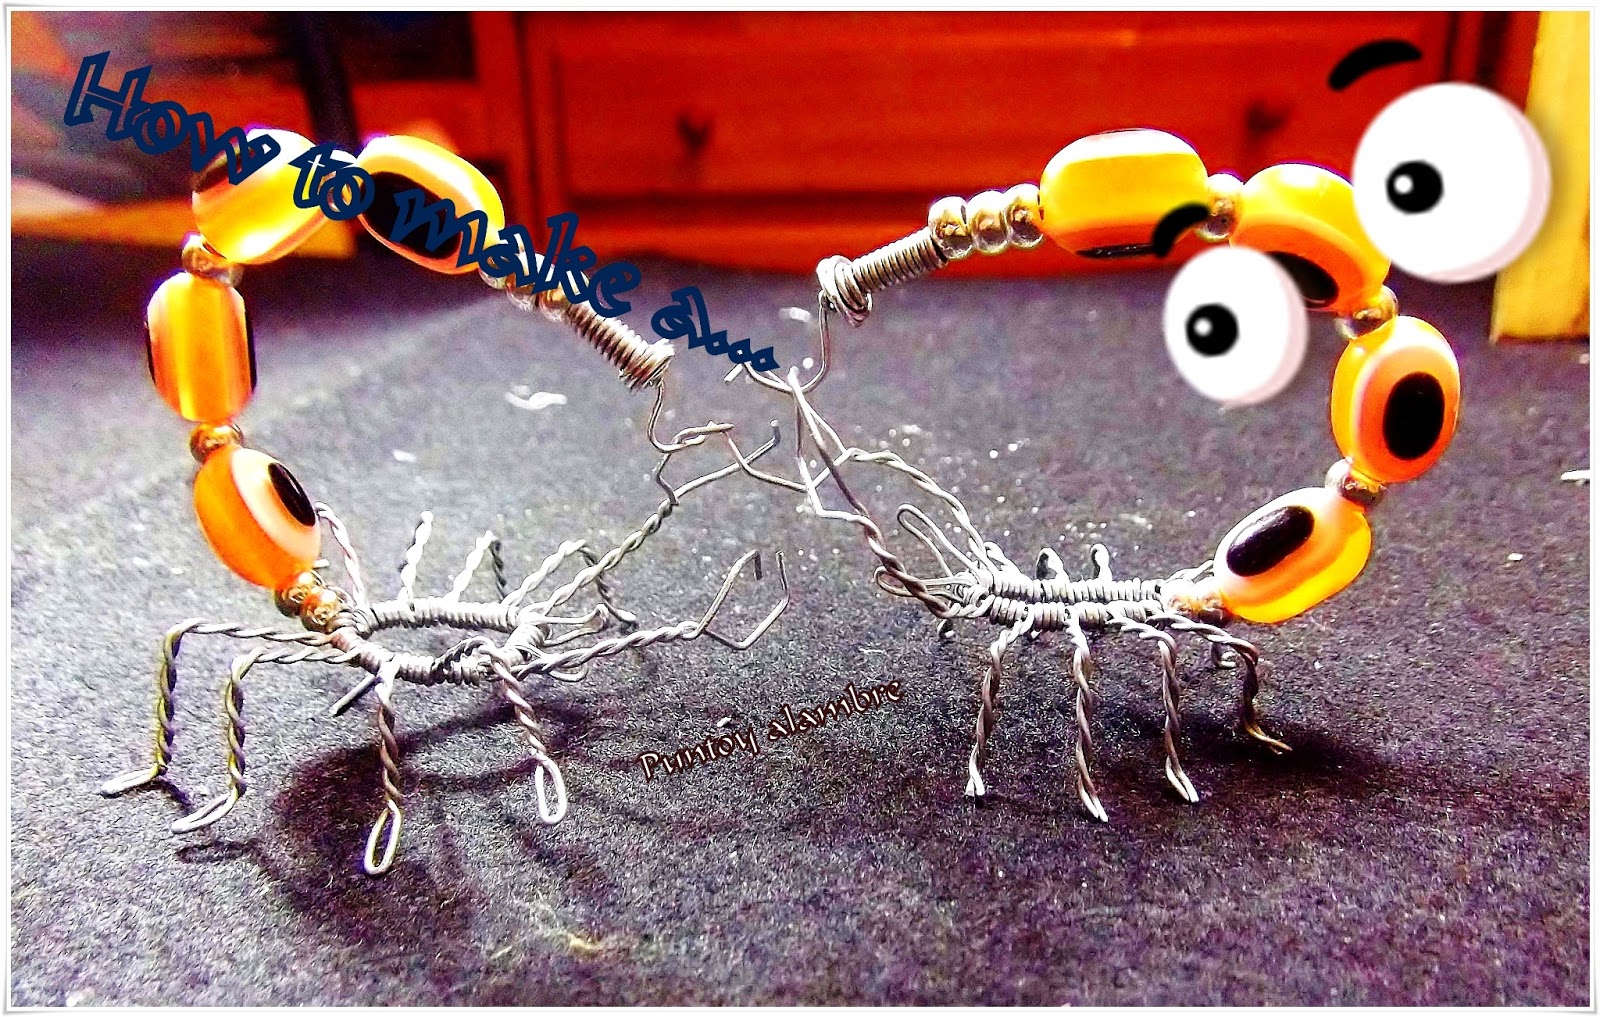 Puntoy Alambre: Como Hacer un Escorpion en Alambre//How to Make a Wire